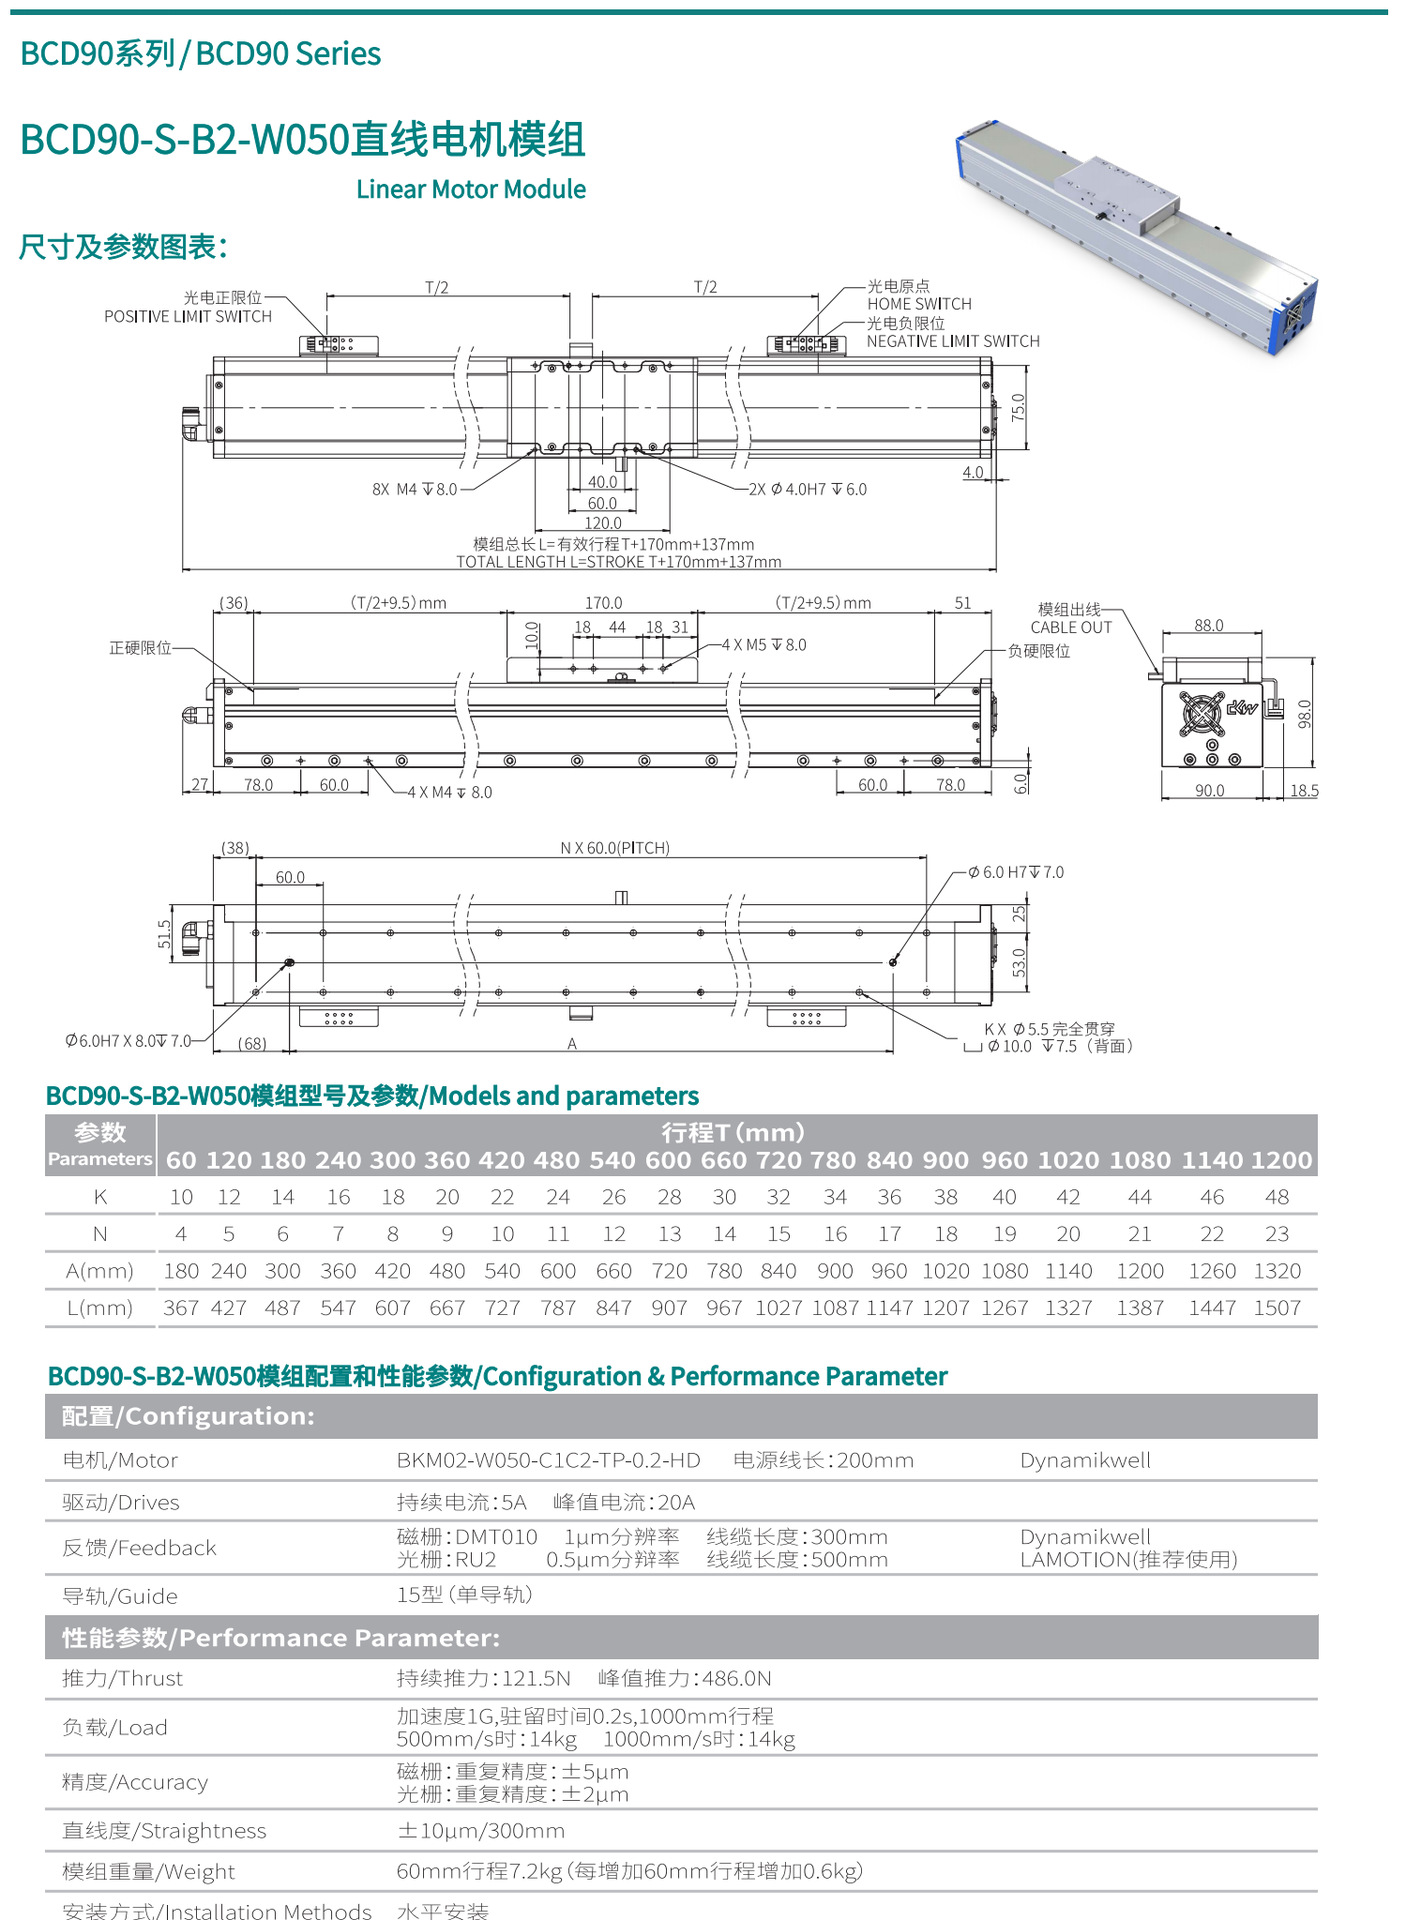 直线电机模组BCD90-S-B2-W050